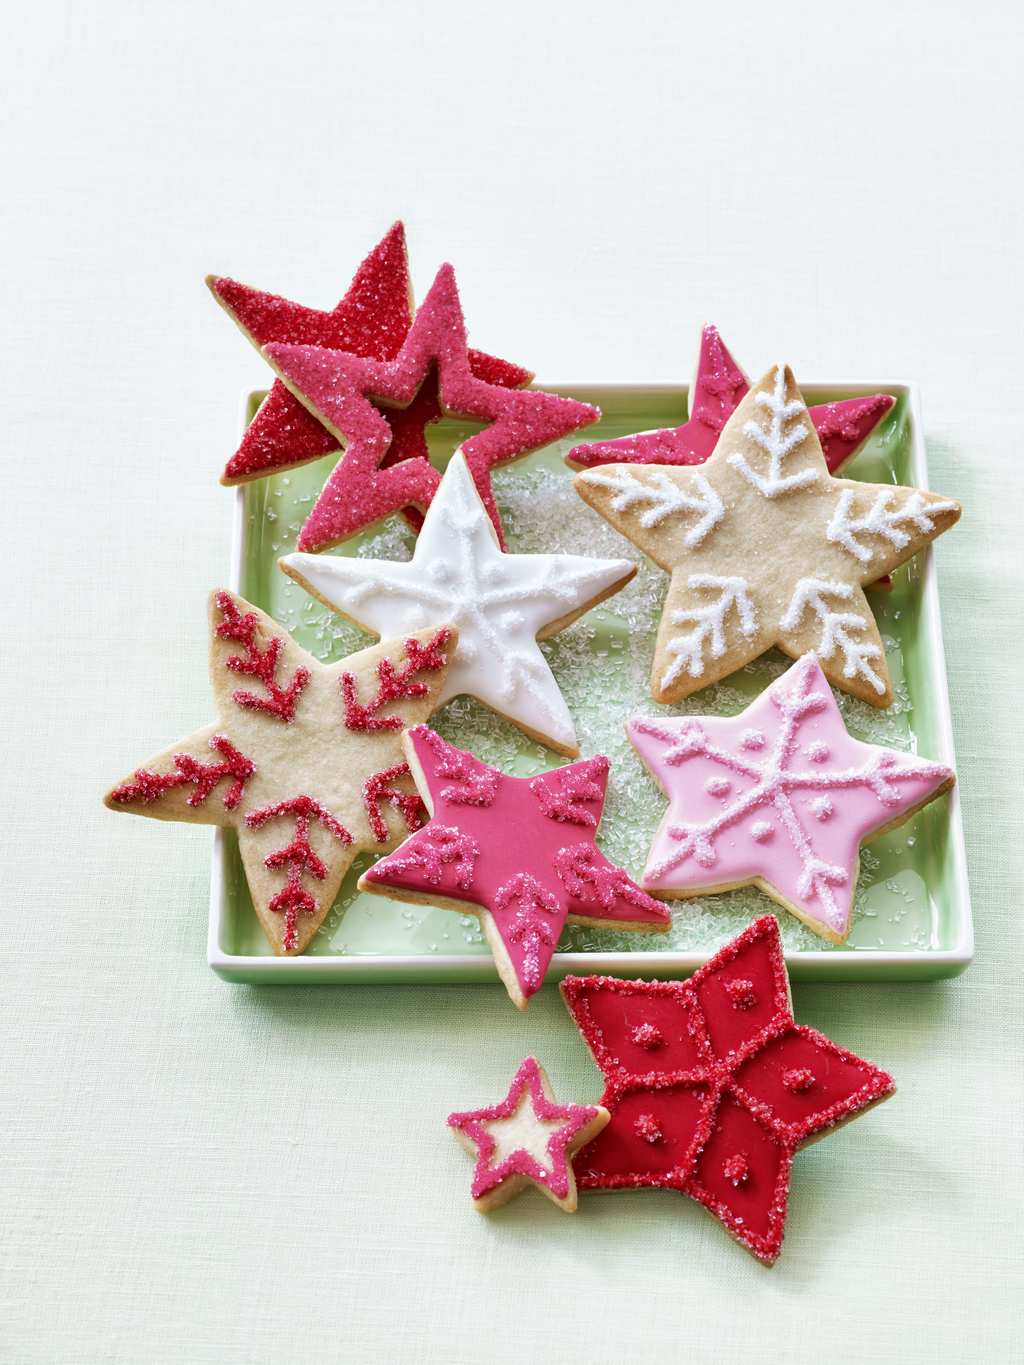 Star cookies by Tara